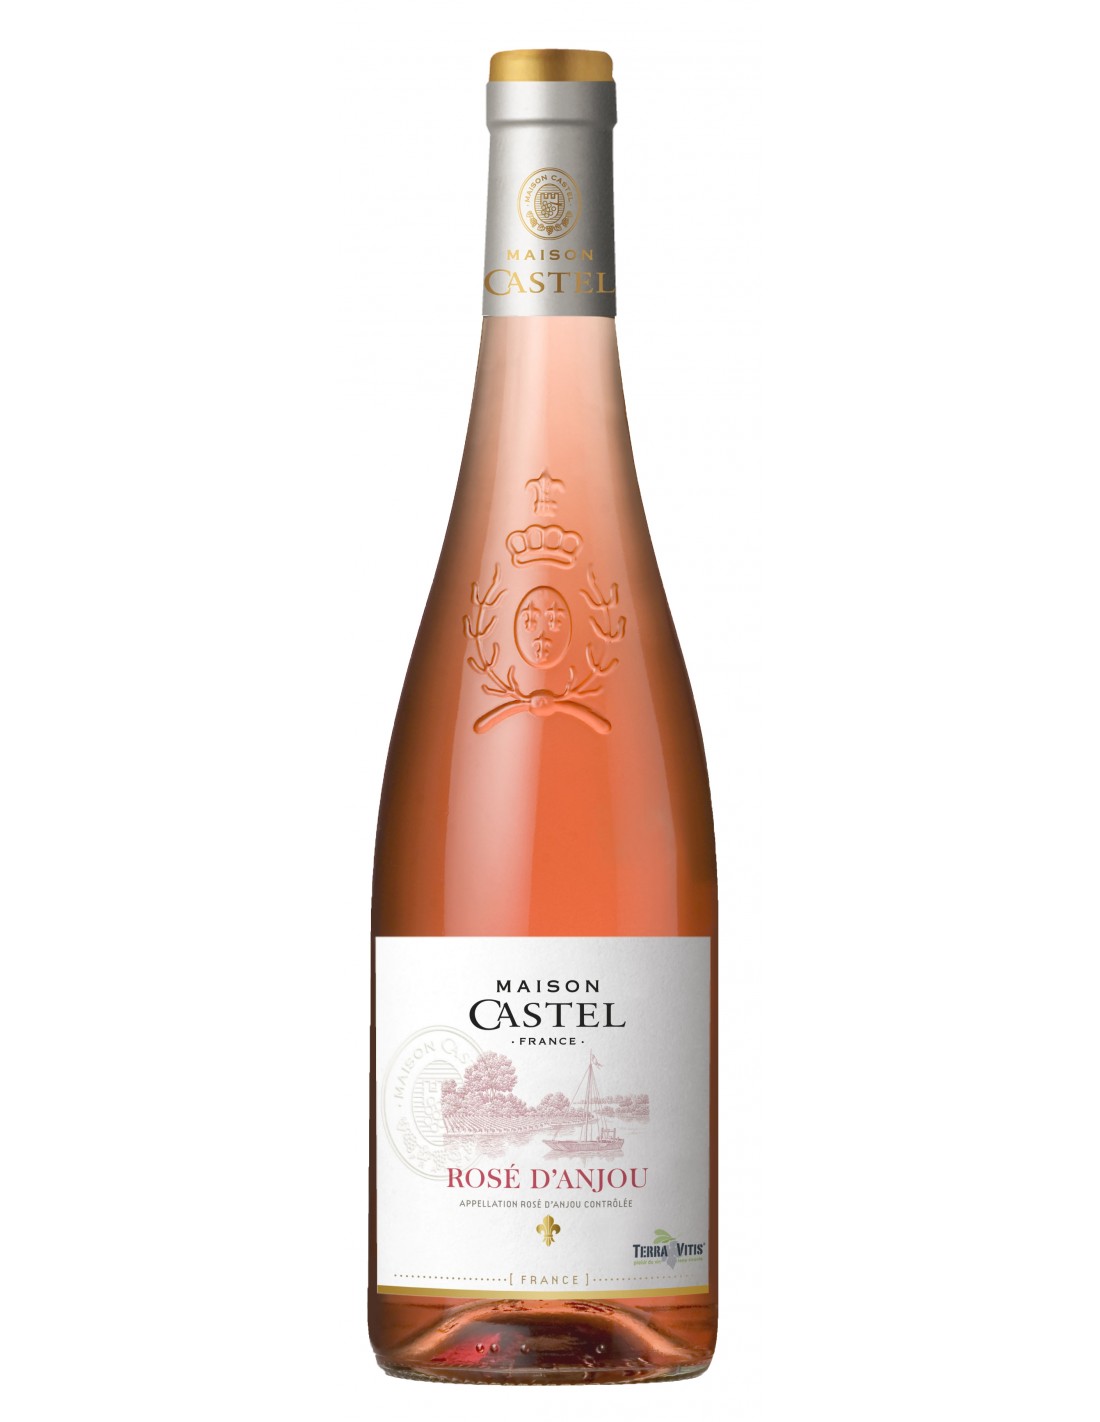 Vin roze sec, D’anjou, Maison Castel Pays d’Oc, 10.5% alc., 0.75L, Franta alcooldiscount.ro